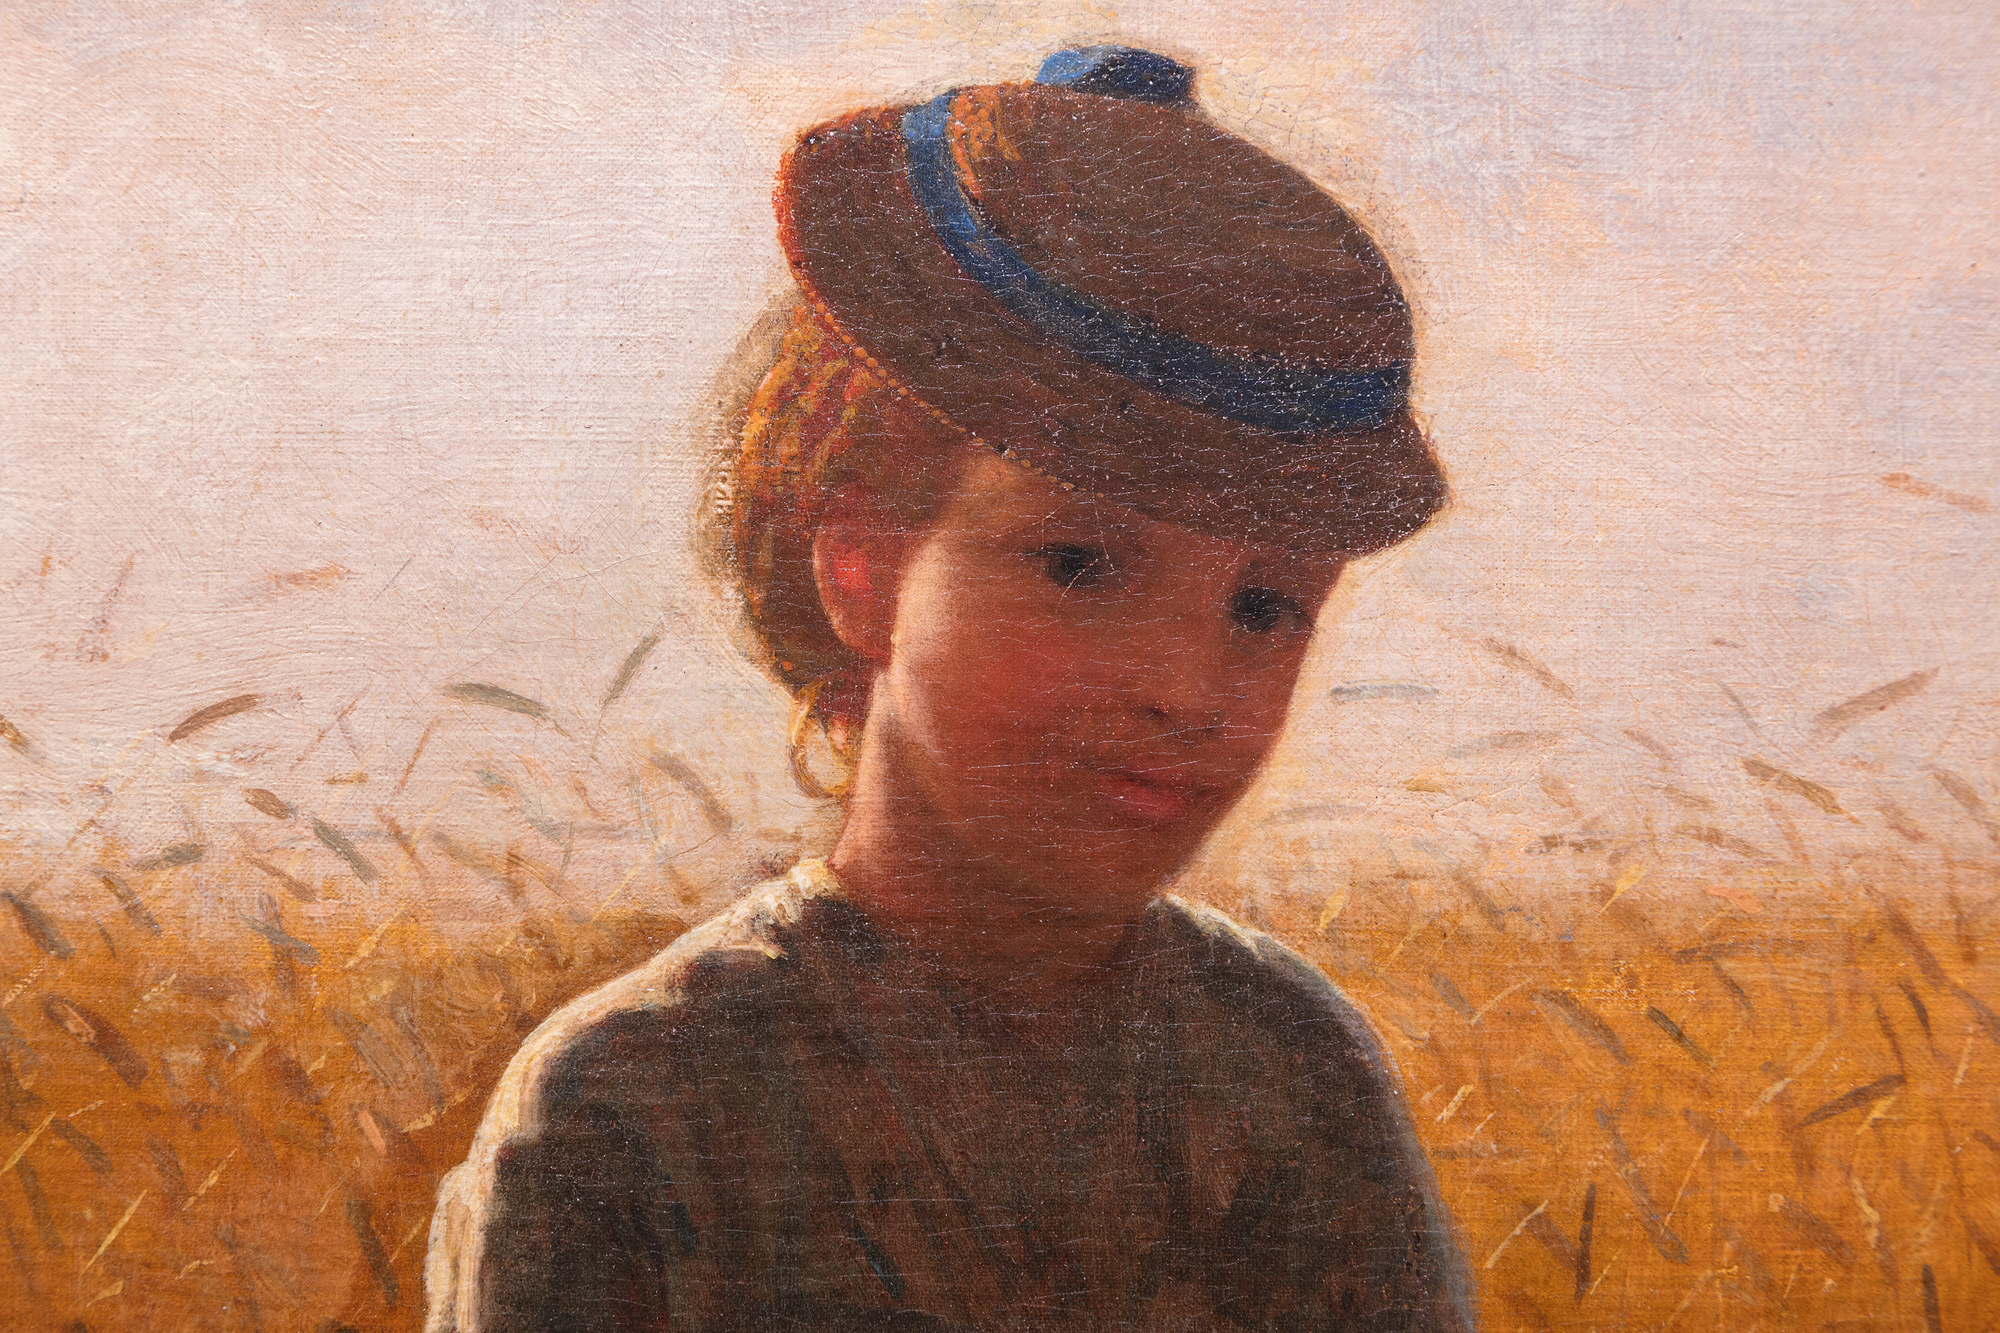 1870年代初頭、ウィンスロー・ホーマーは、ニューヨーク州のハドソン川とキャッツキル山脈の間に位置する、小麦の栽培が盛んな小さな集落での田舎暮らしの風景を頻繁に描いていました。ハーリーといえば、1872年の夏に描かれたホーマーの代表作『鞭打ちのスナップ』のインスピレーション源として知られる。この地域からインスピレーションを得た他の多くの絵画の中でも、「麦畑に立つ少女」は情感に富んでいるが、過度に感傷的になることはない。この作品は、1866年にフランスで描いた習作「麦畑で」と、アメリカに戻った翌年に描いた別の作品に直接関連している。しかし、ホーマーが最も誇りに思ったのは間違いなくこの作品であろう。肖像画であり、衣装の習作であり、ヨーロッパの牧歌的な絵画の偉大な伝統に則った風俗画であり、ドラマチックな逆光と雰囲気のある力作で、すぐに消えてしまう宵闇の時間に、花の香りと麦の穂のタッチで浮き立たせた。1874年、ホーマーはナショナル・アカデミー・オブ・デザイン展に4点の絵画を出品した。そのうちの1枚に「少女」というタイトルがつけられていた。それはこの作品ではないだろうか？